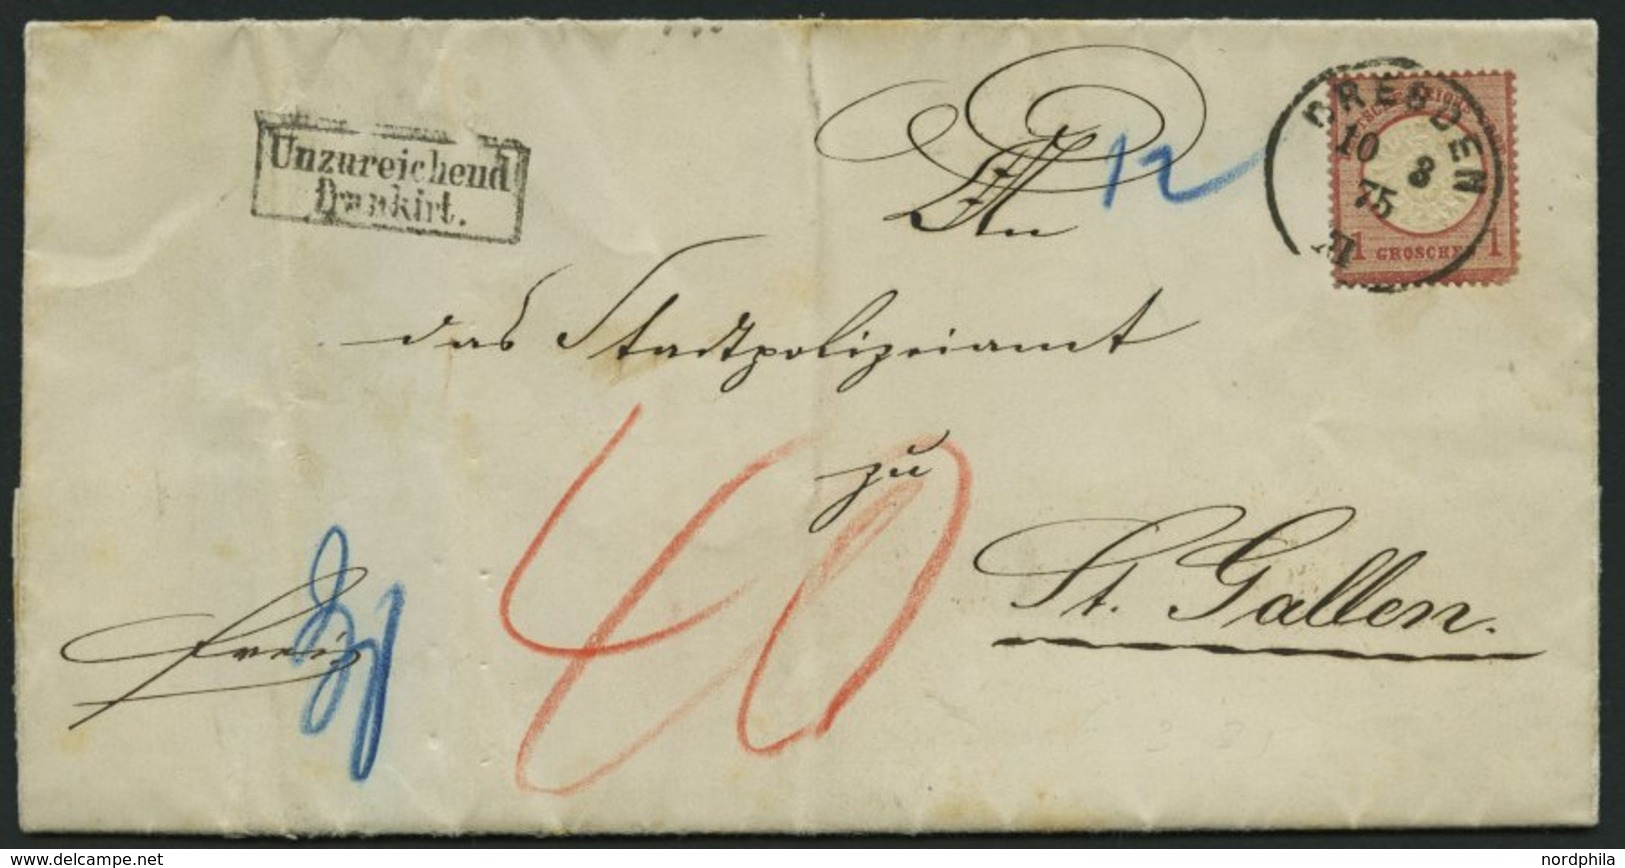 Dt. Reich 19 BRIEF, 1872, 1 Gr. Rotkarmin (Eckzahnfehler), Einzelfrankatur Auf Unterfrankiertem Auslandsbrief Mit K1 DRE - Usados